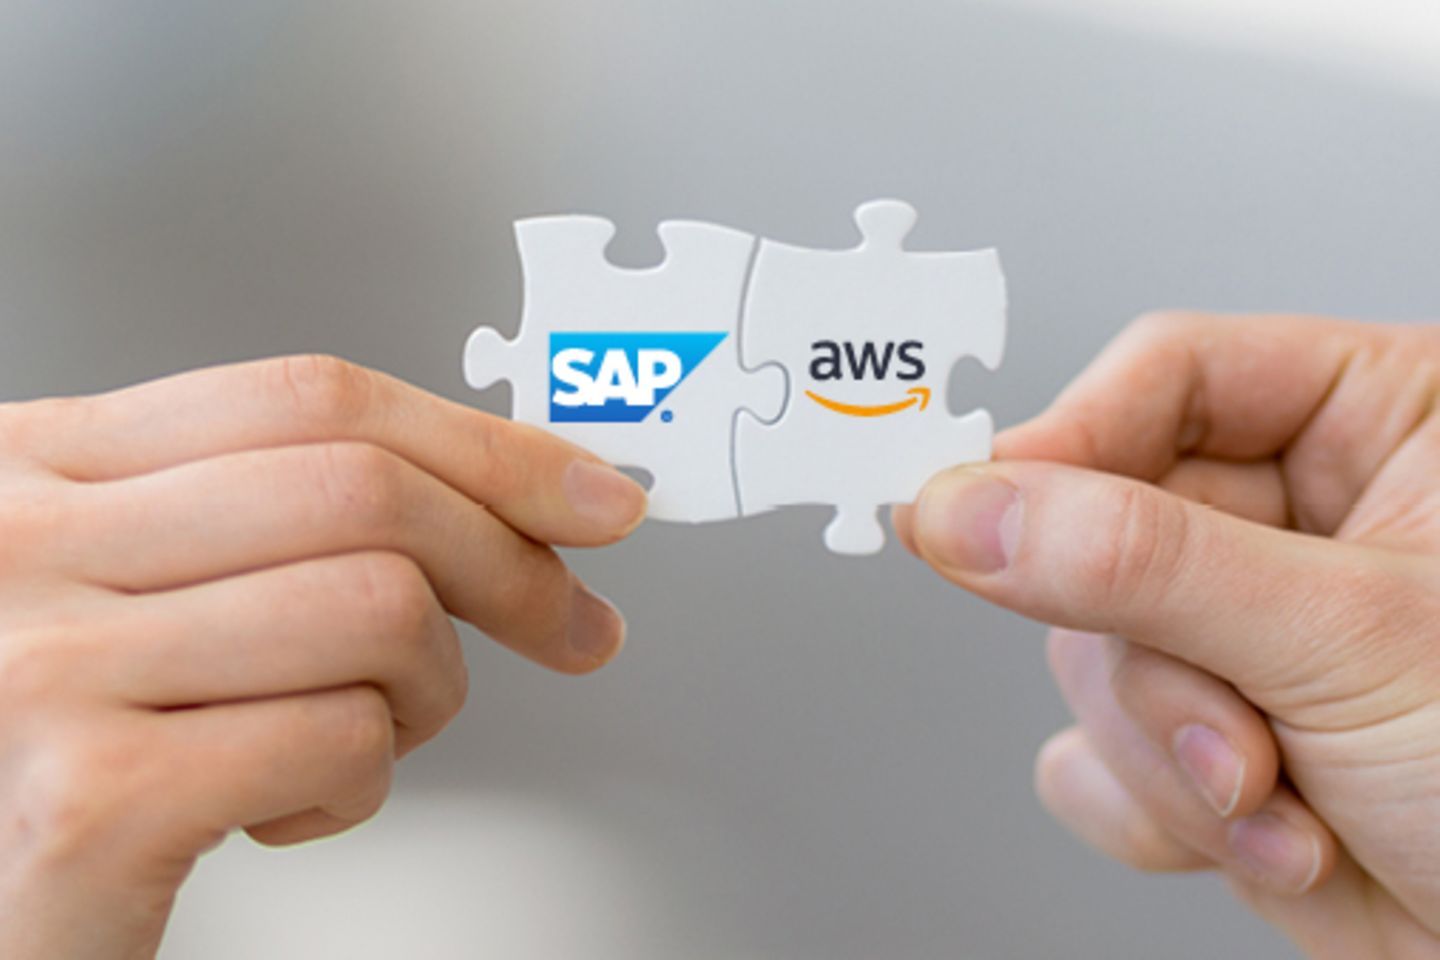 Mãos seguram peças do quebra-cabeça com os logotipos SAP e AWS combinados entre si.